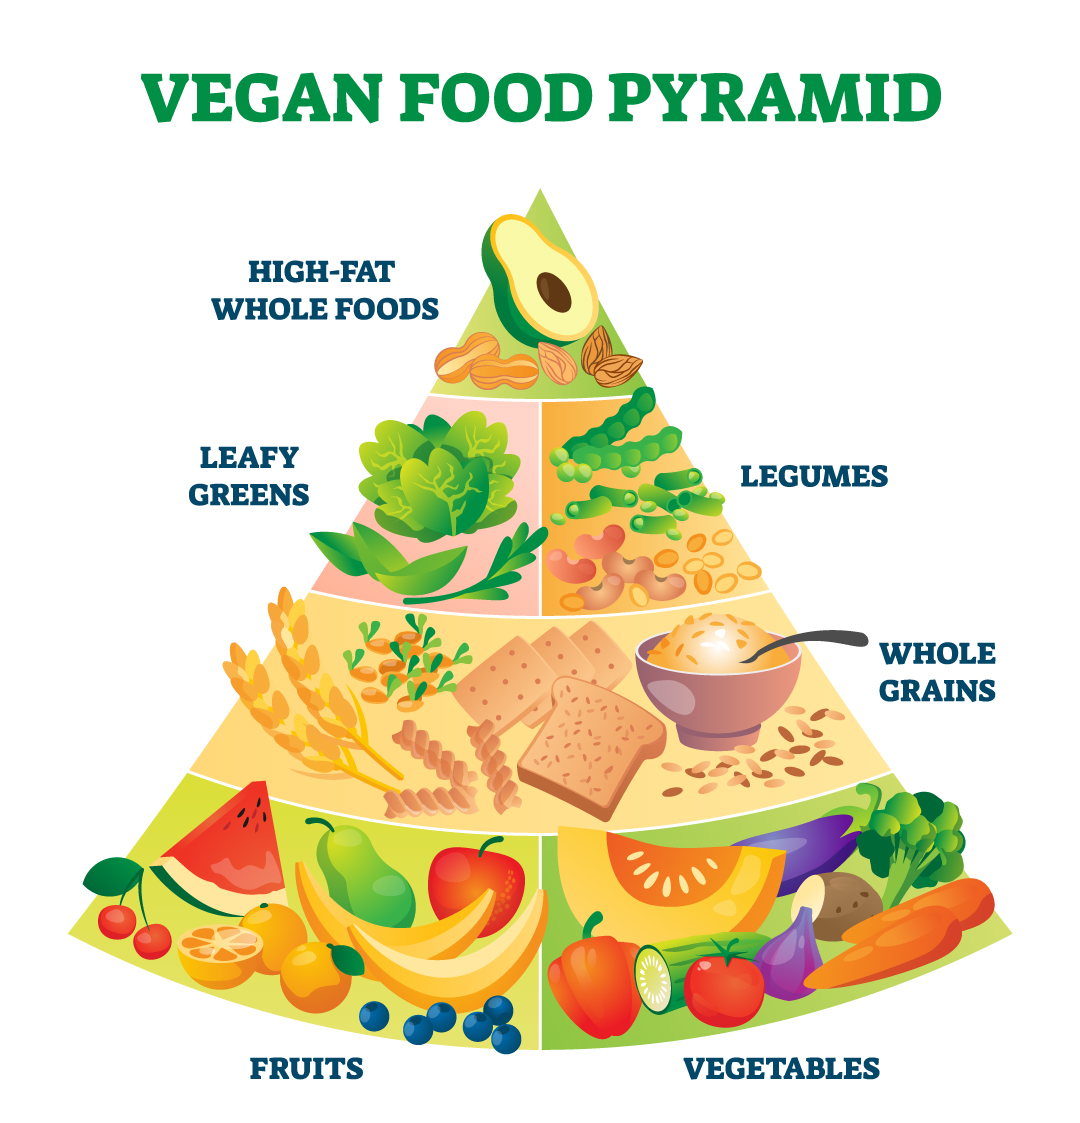 Vegan food pyramid diagram.